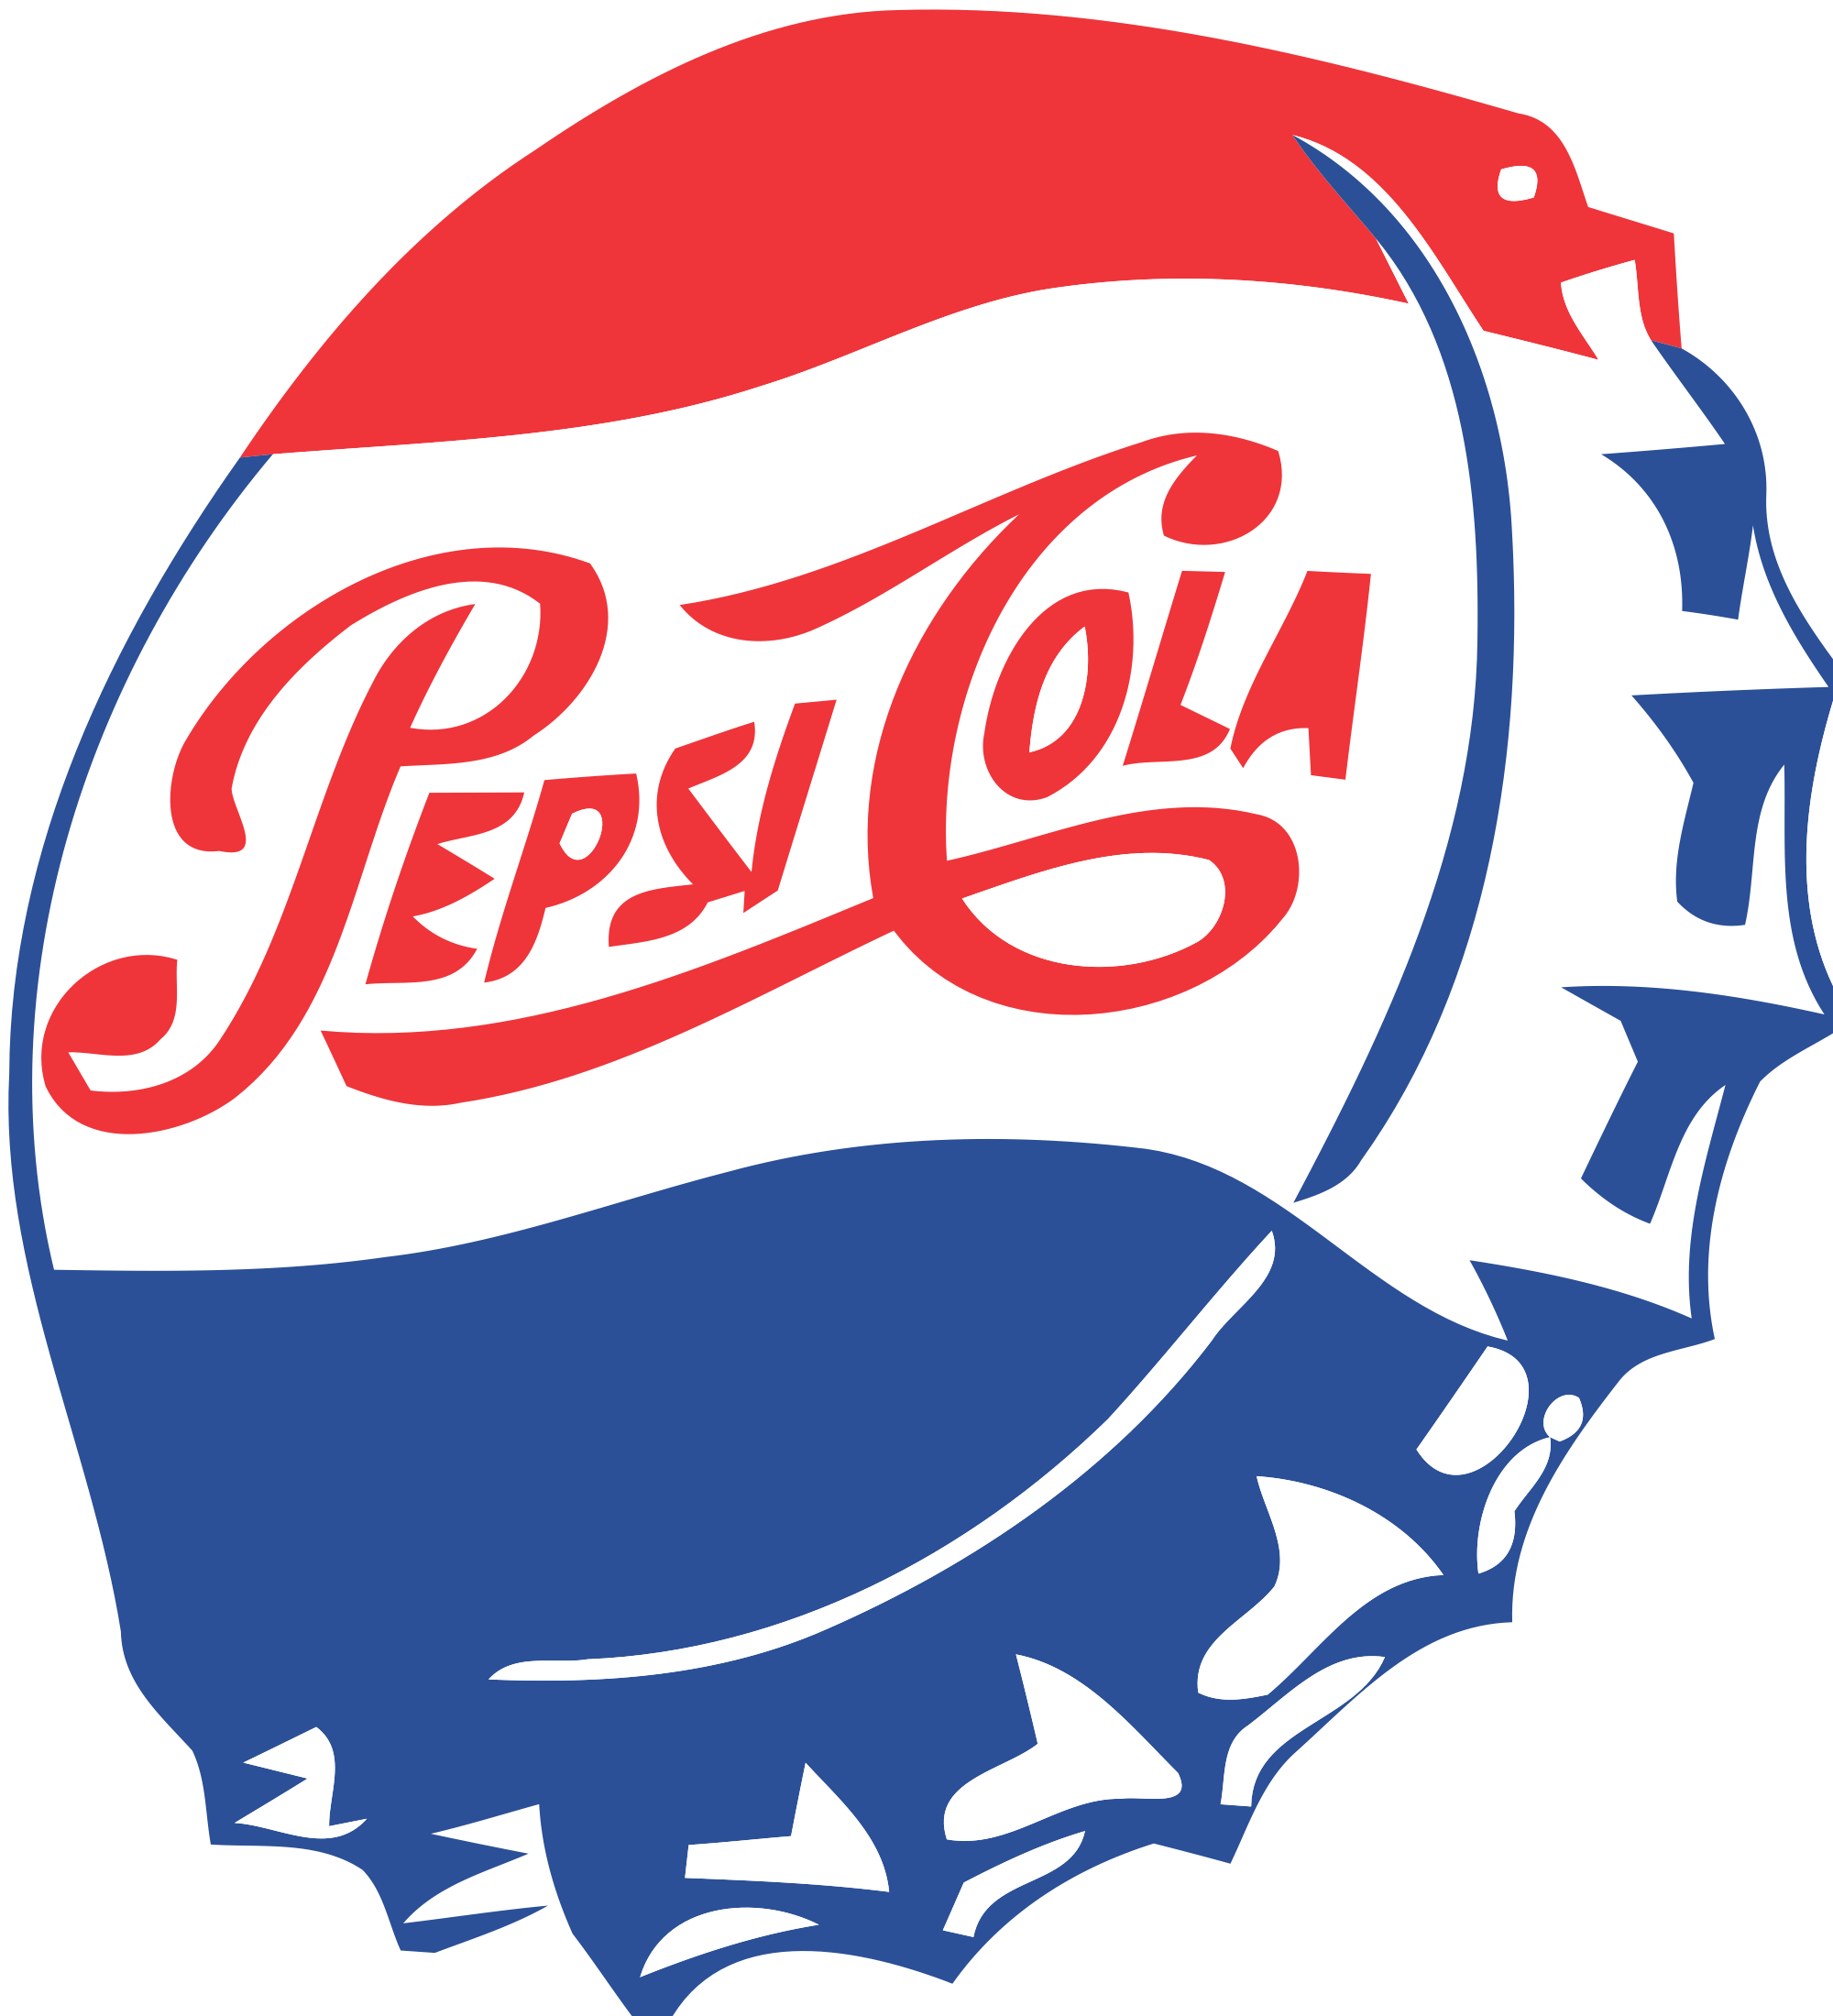 Pepsi-Cola Wallpapers - Wallpaper Cave